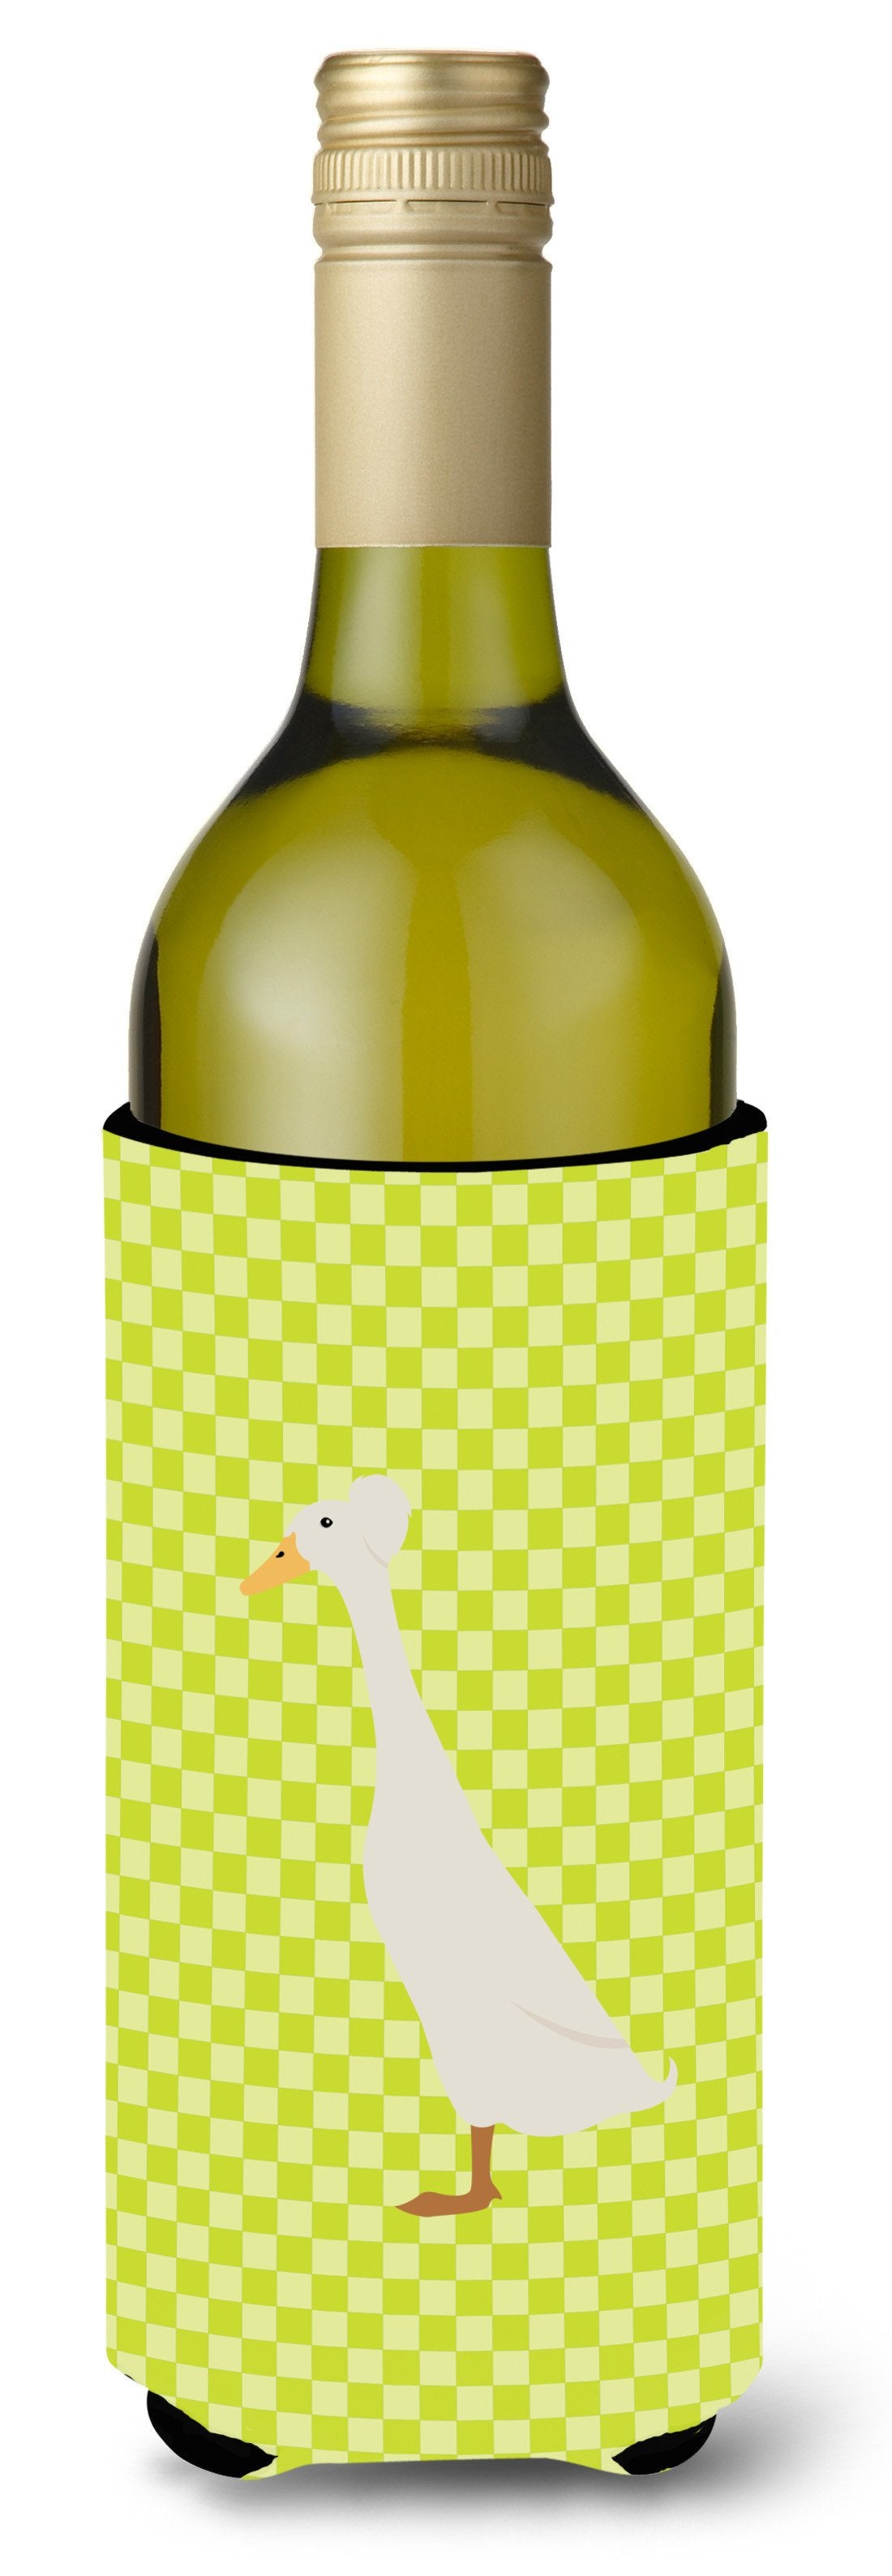 Bali Duck Green Wine Bottle Beverge Insulator Hugger BB7685LITERK by Caroline's Treasures